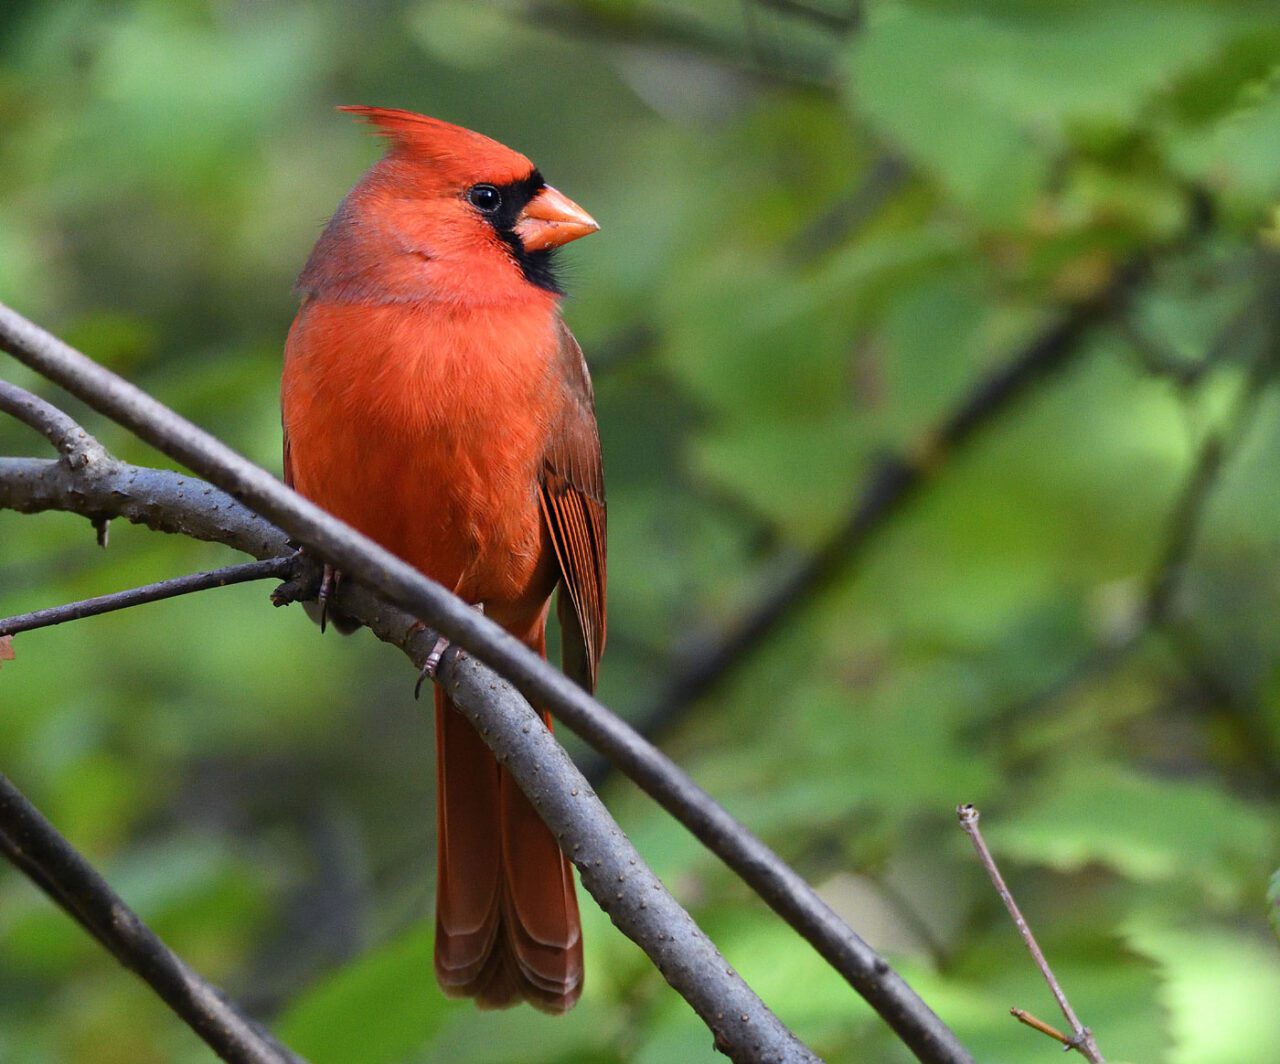 Un pájaro de color rojo brillante con una cresta roja, un pico rojo cónico y una máscara facial negra, se posa en una rama.